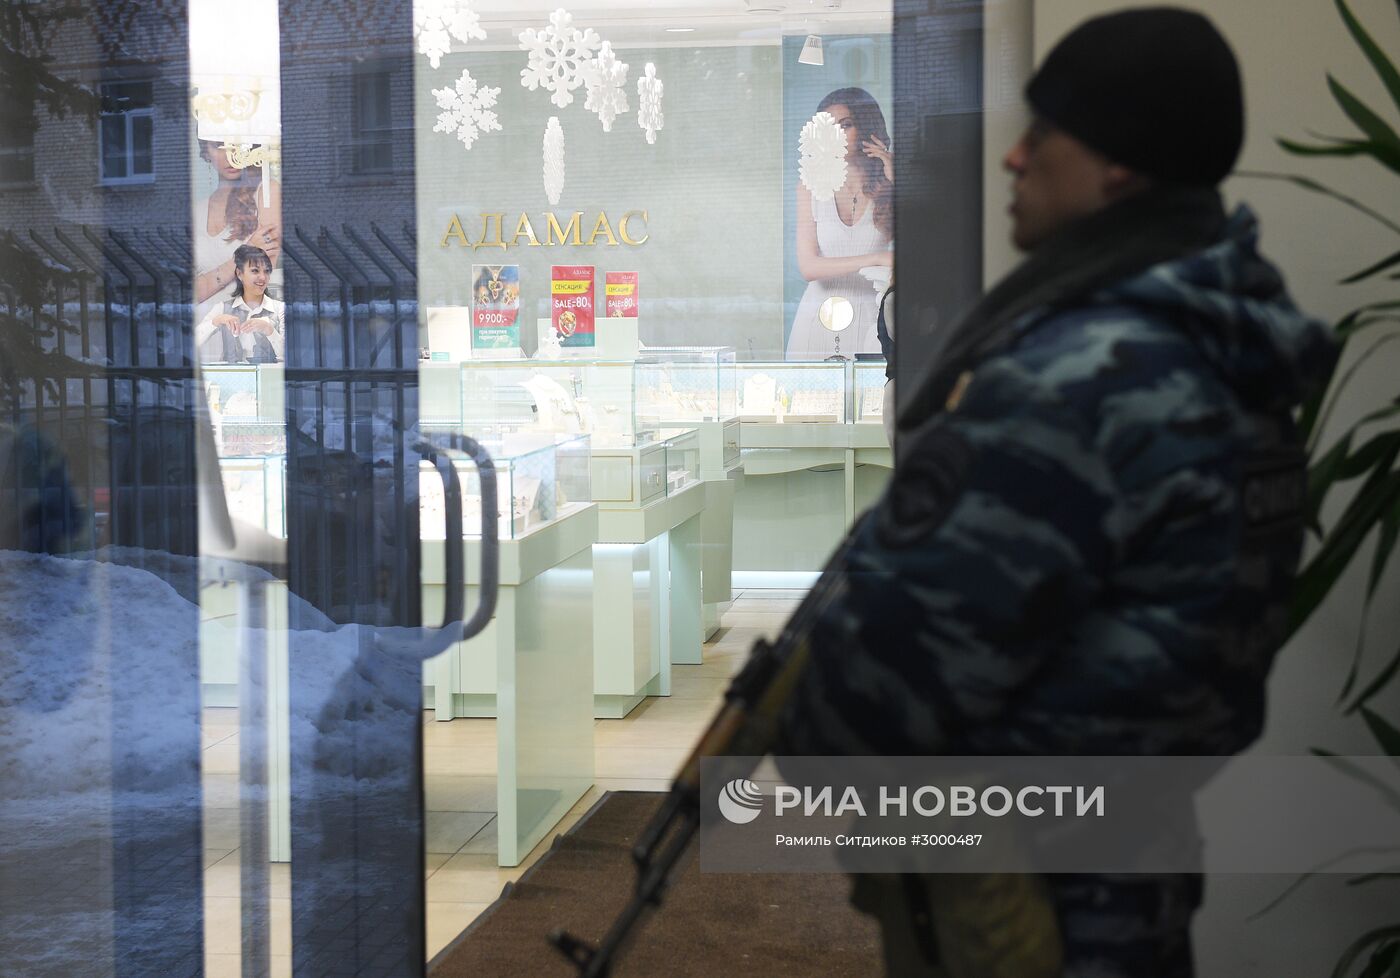 Обыск проходит в московском офисе ювелирной компании "Адамас"